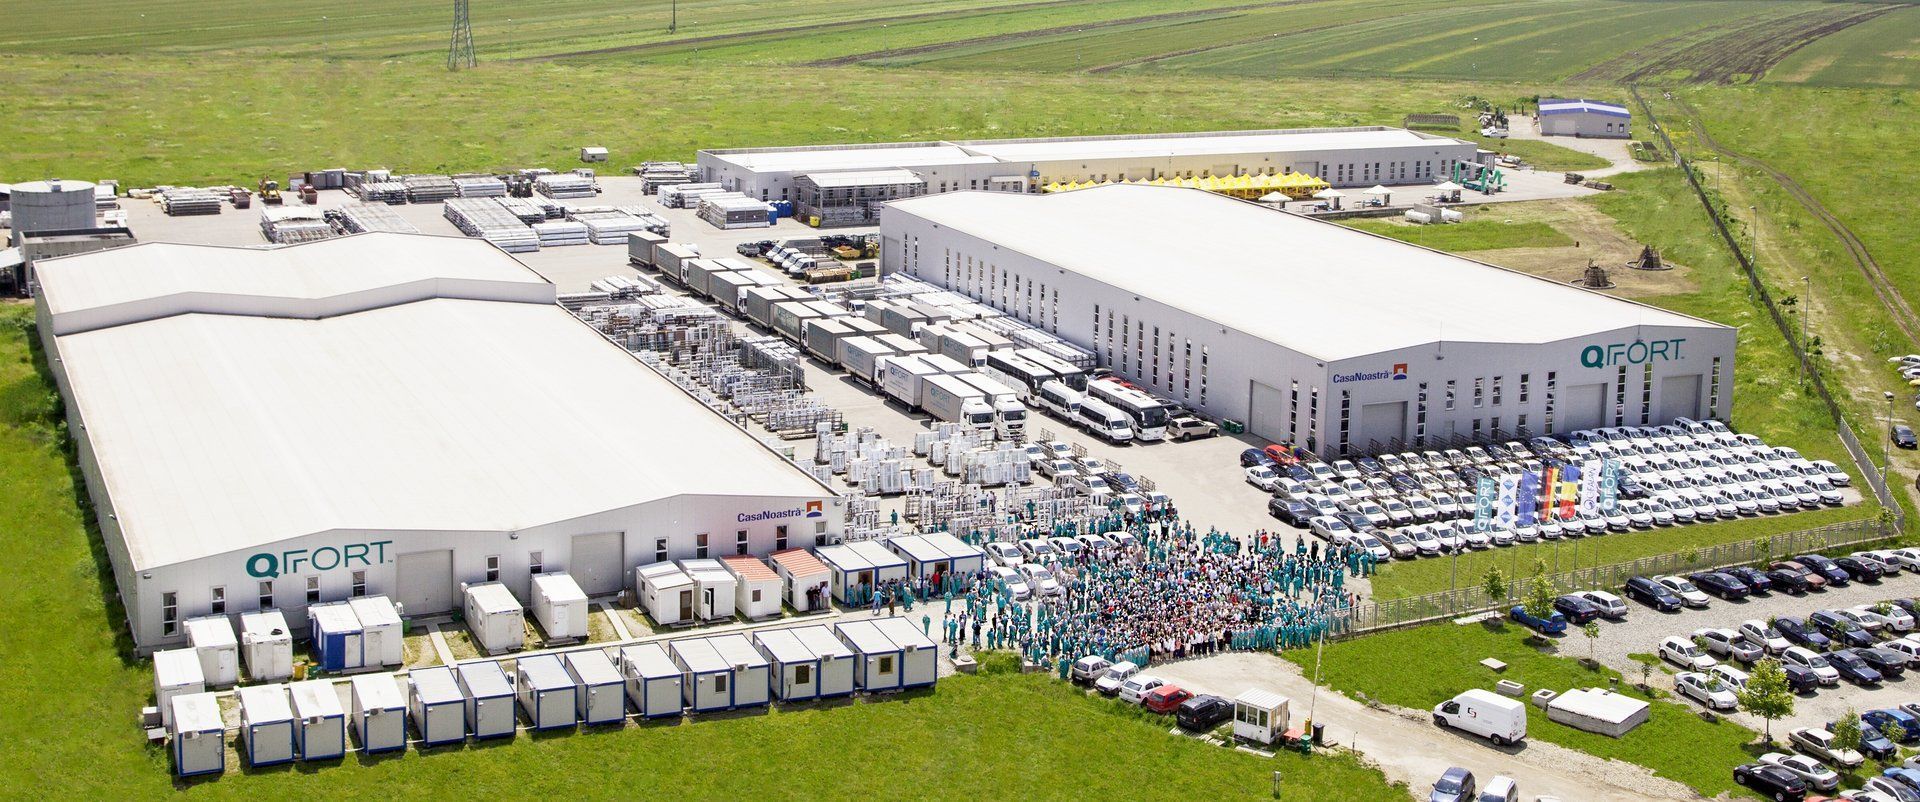 Producătorul uşilor şi ferestrelor QFort investeşte peste 20 milioane euro într-o nouă fabrică lângă Craiova